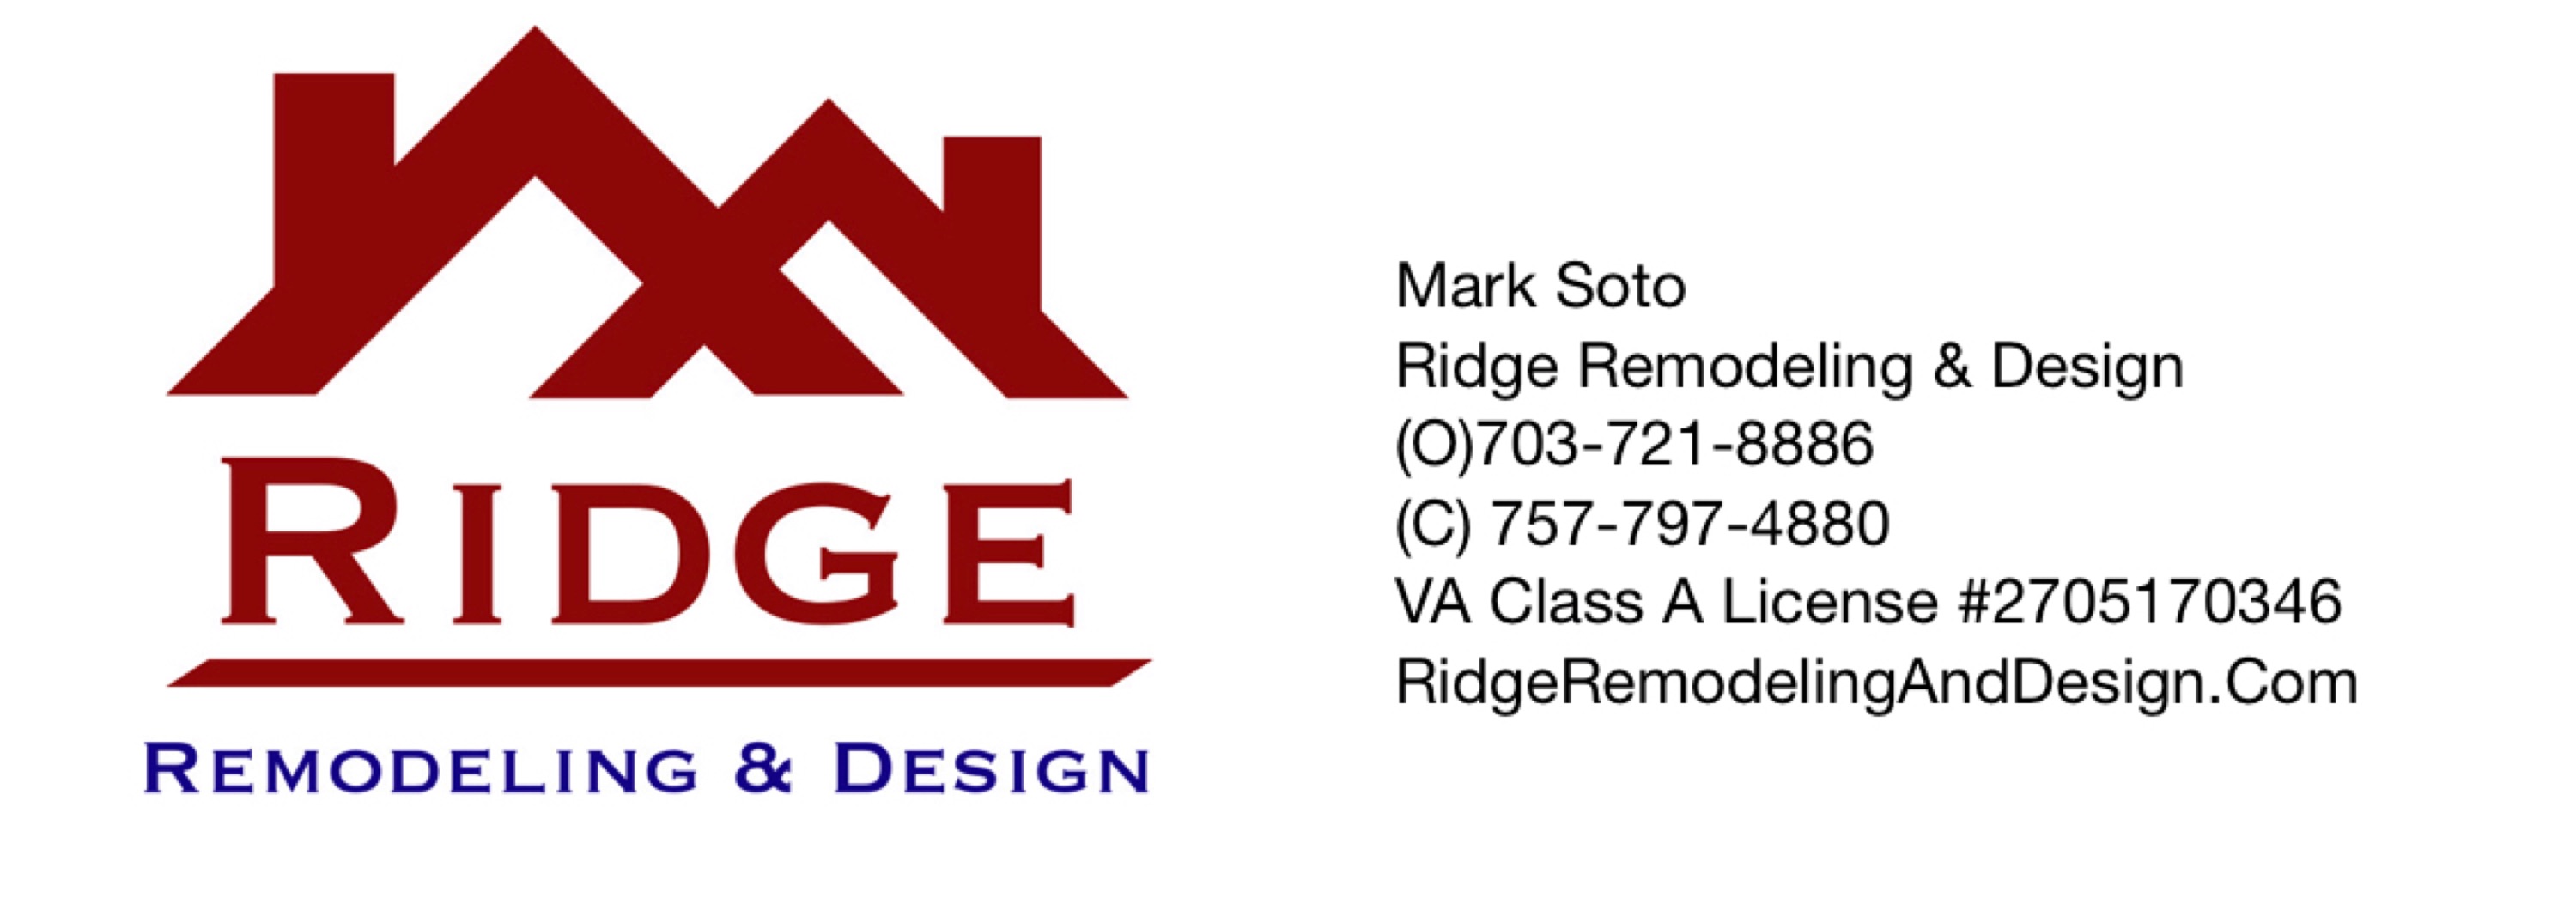 Ridge Remodeling & Design, LLC Logo